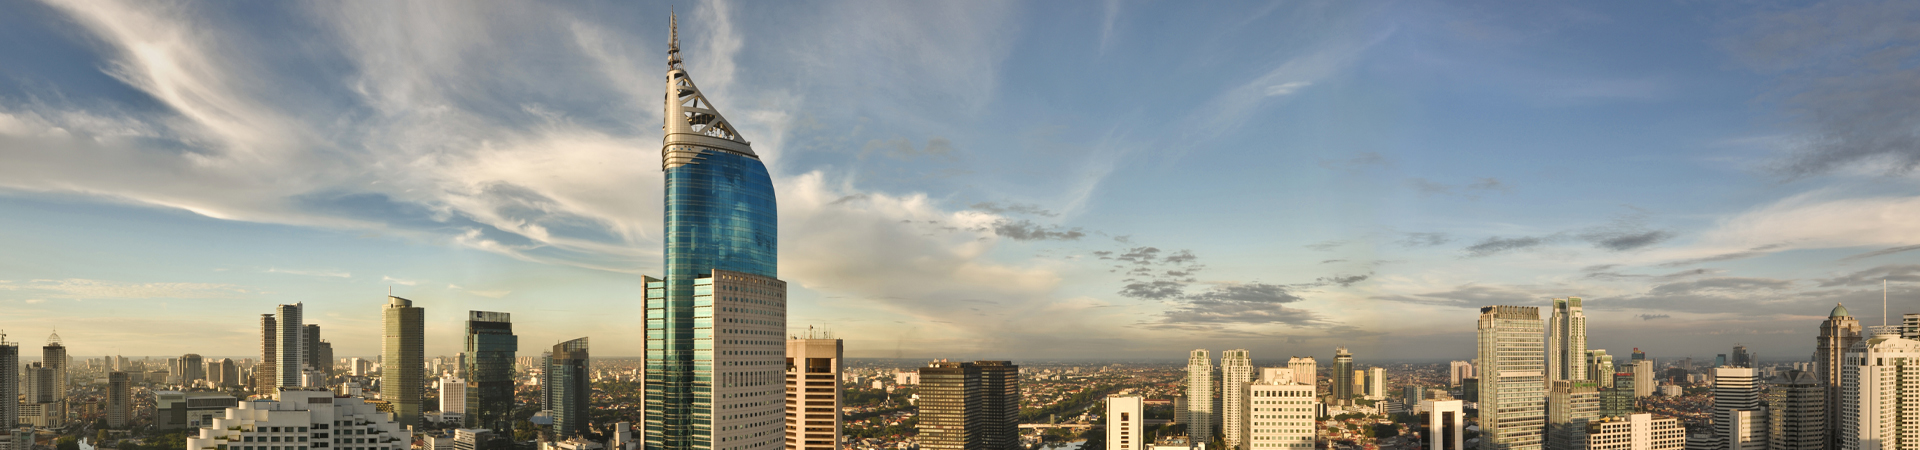 Indonesia Jakarta city skyline